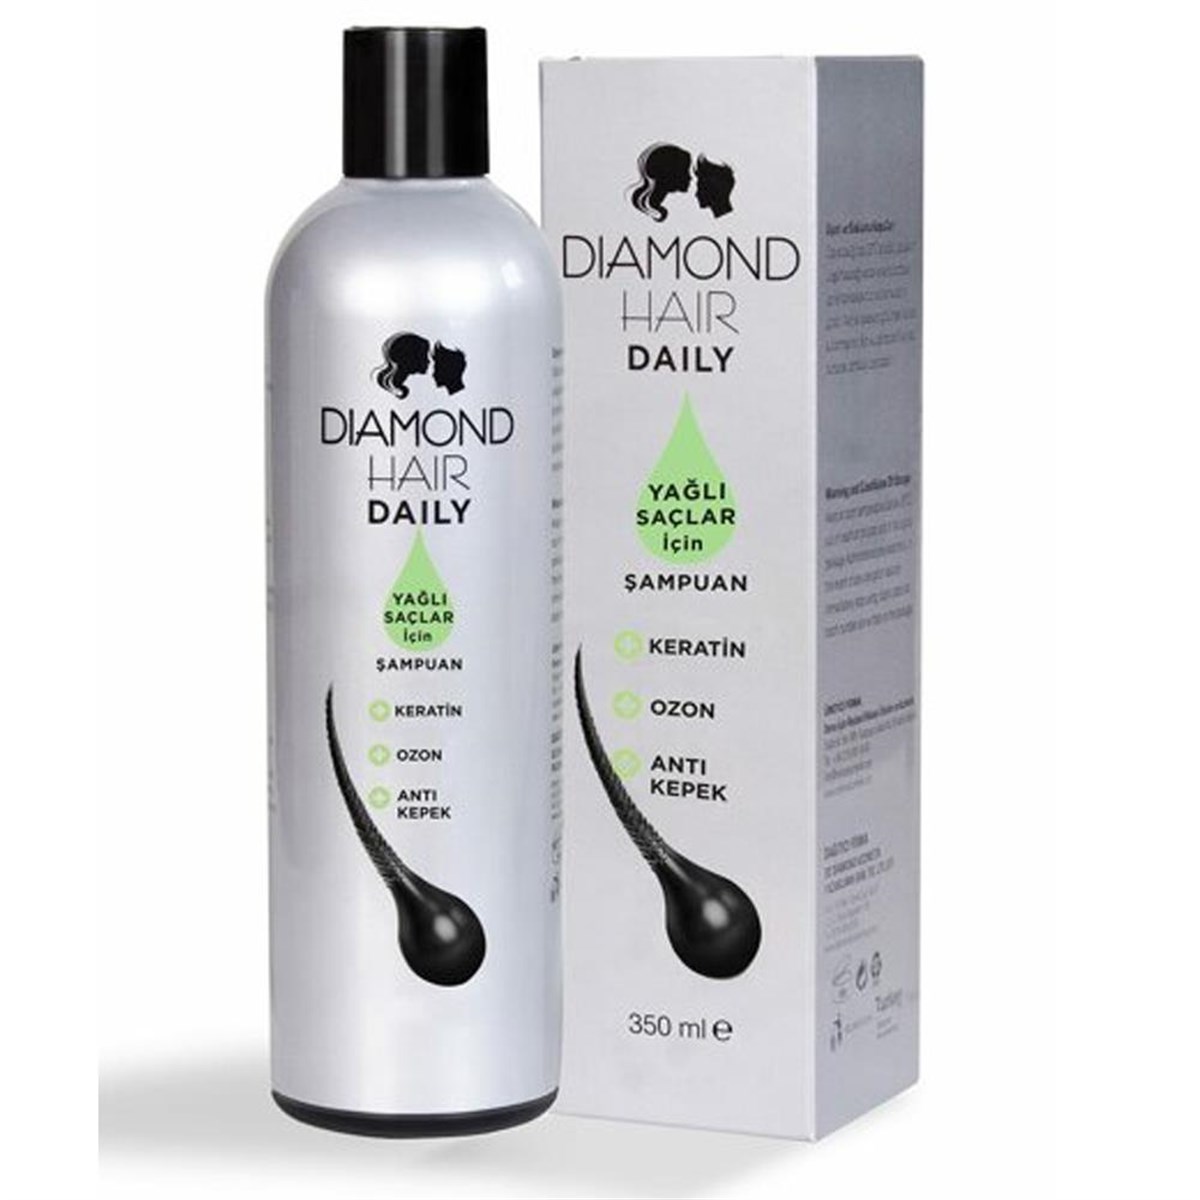 Diamond Hair Daily Yağlı Saçlar için Şampuan 350ml DepoEczanem.com |  Dermokozmetik Cilt & Vücut Bakımı, Vitamin & Mineral – Takviye Edici Gıda  ve Reçetesiz Sağlık Ürünleri